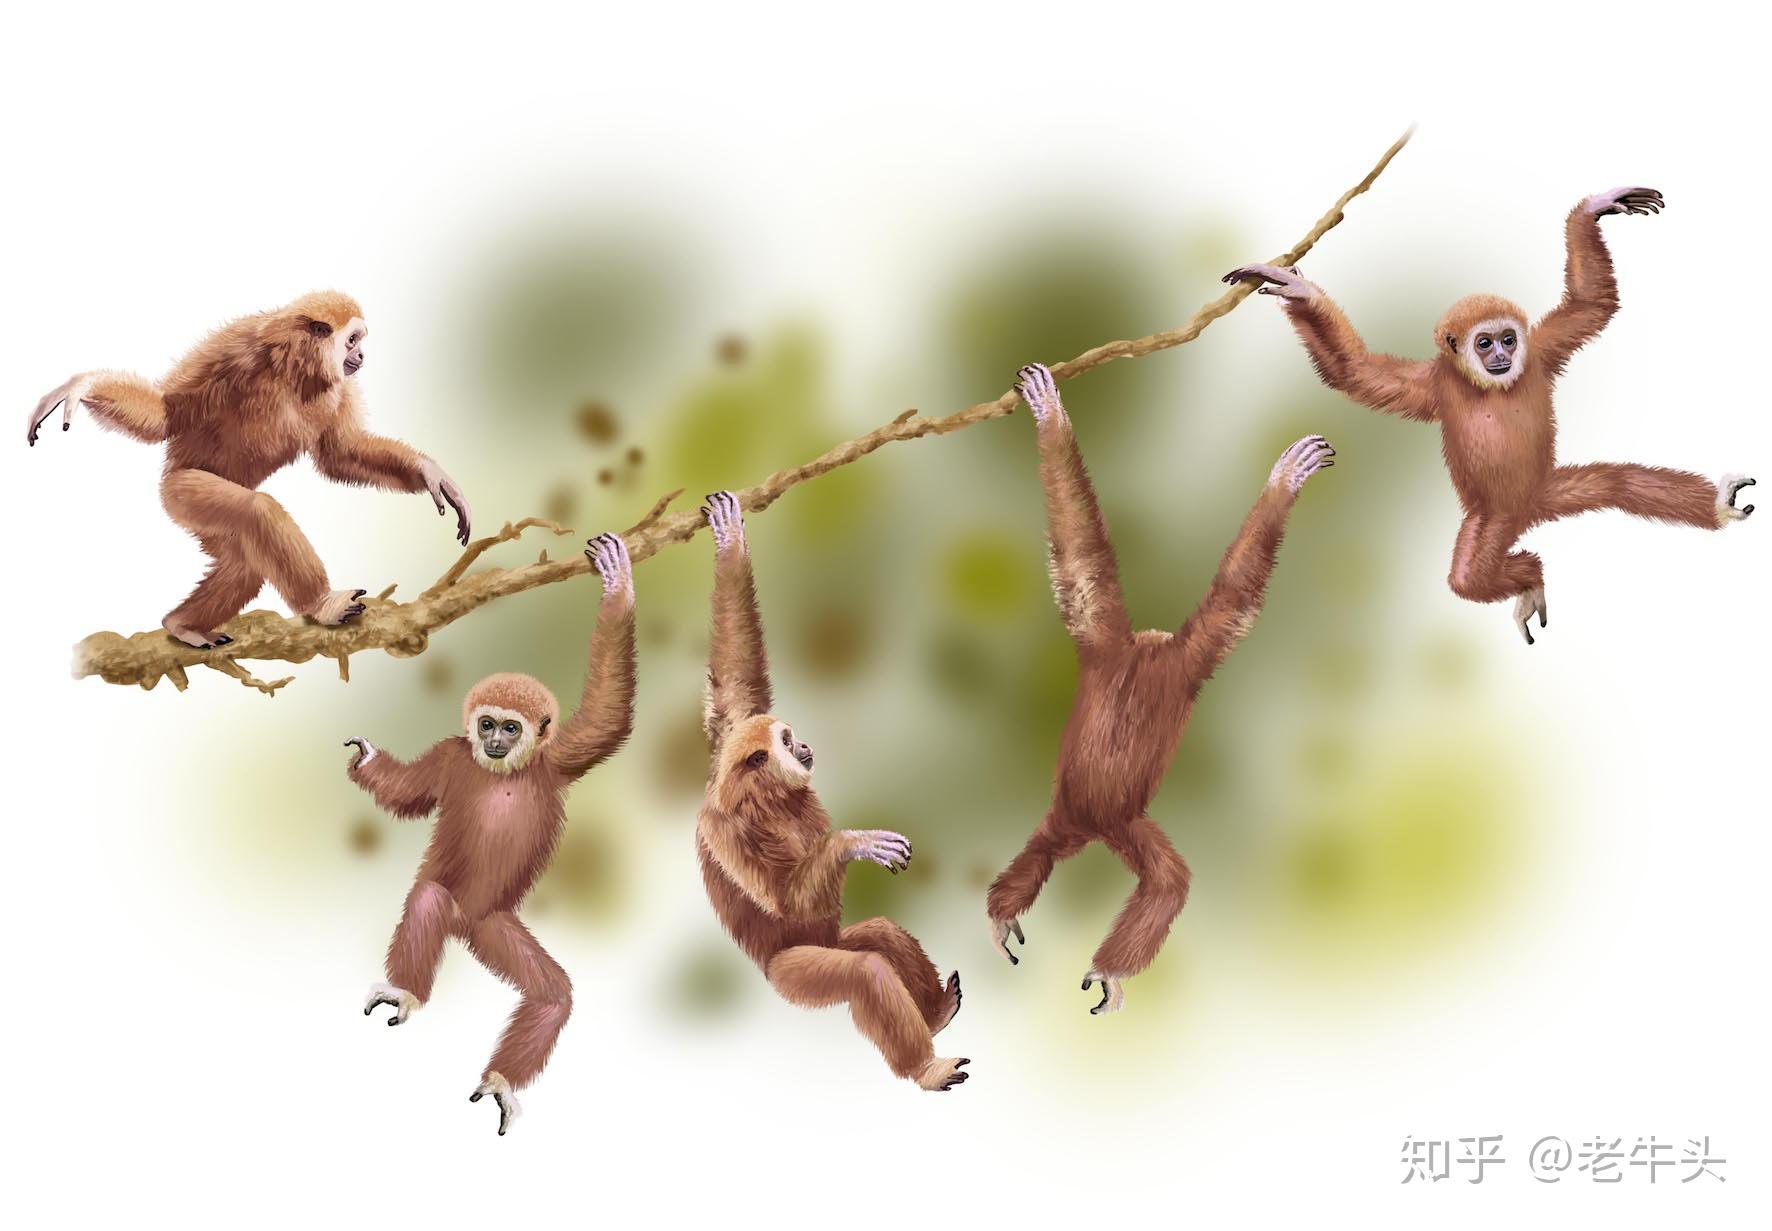 【ベストコレクション】 猿 イラスト 画像 836106-猿 イラスト 画像